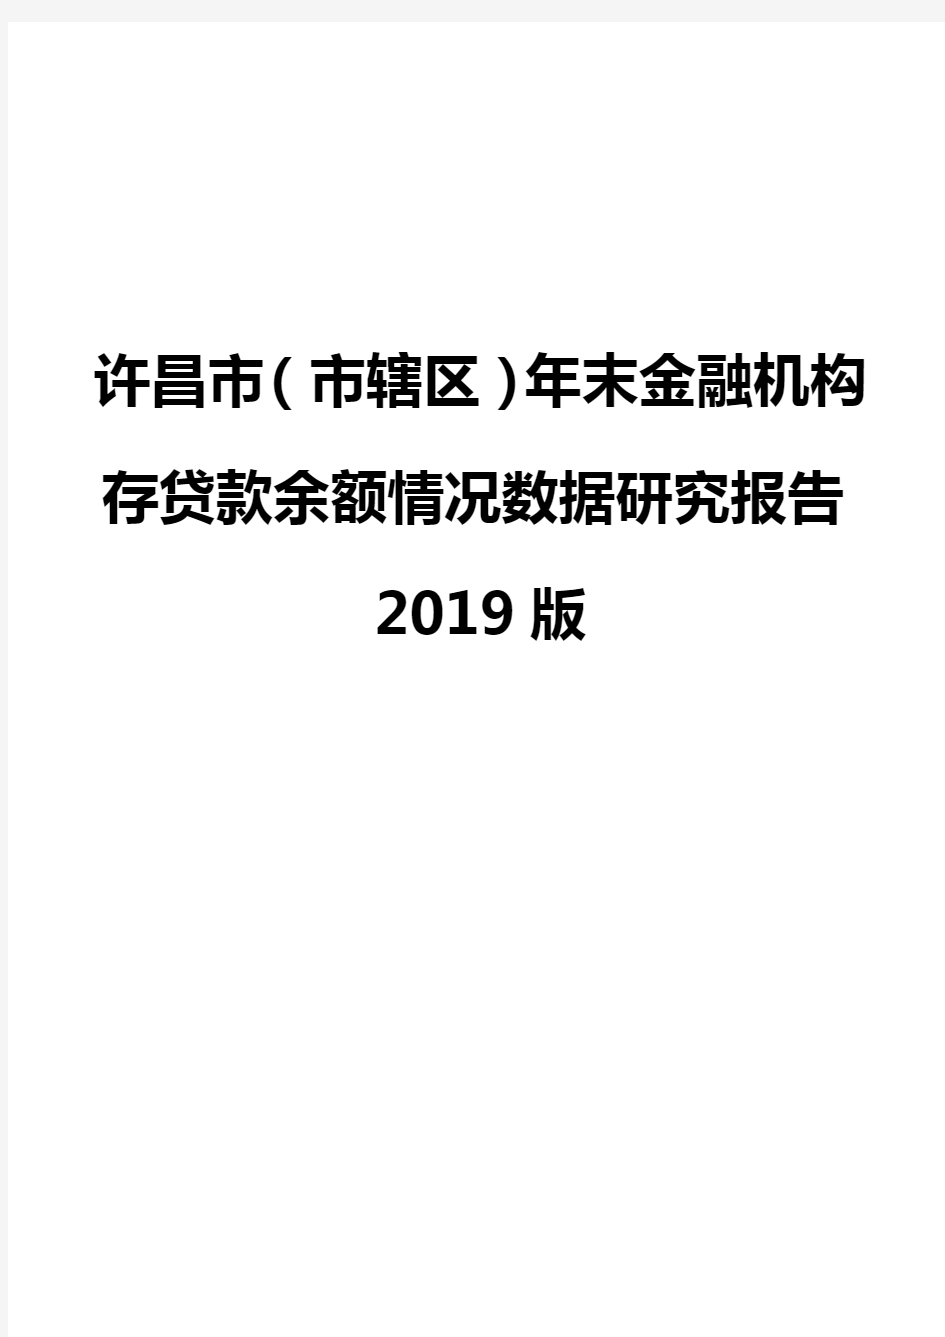 许昌市(市辖区)年末金融机构存贷款余额情况数据研究报告2019版